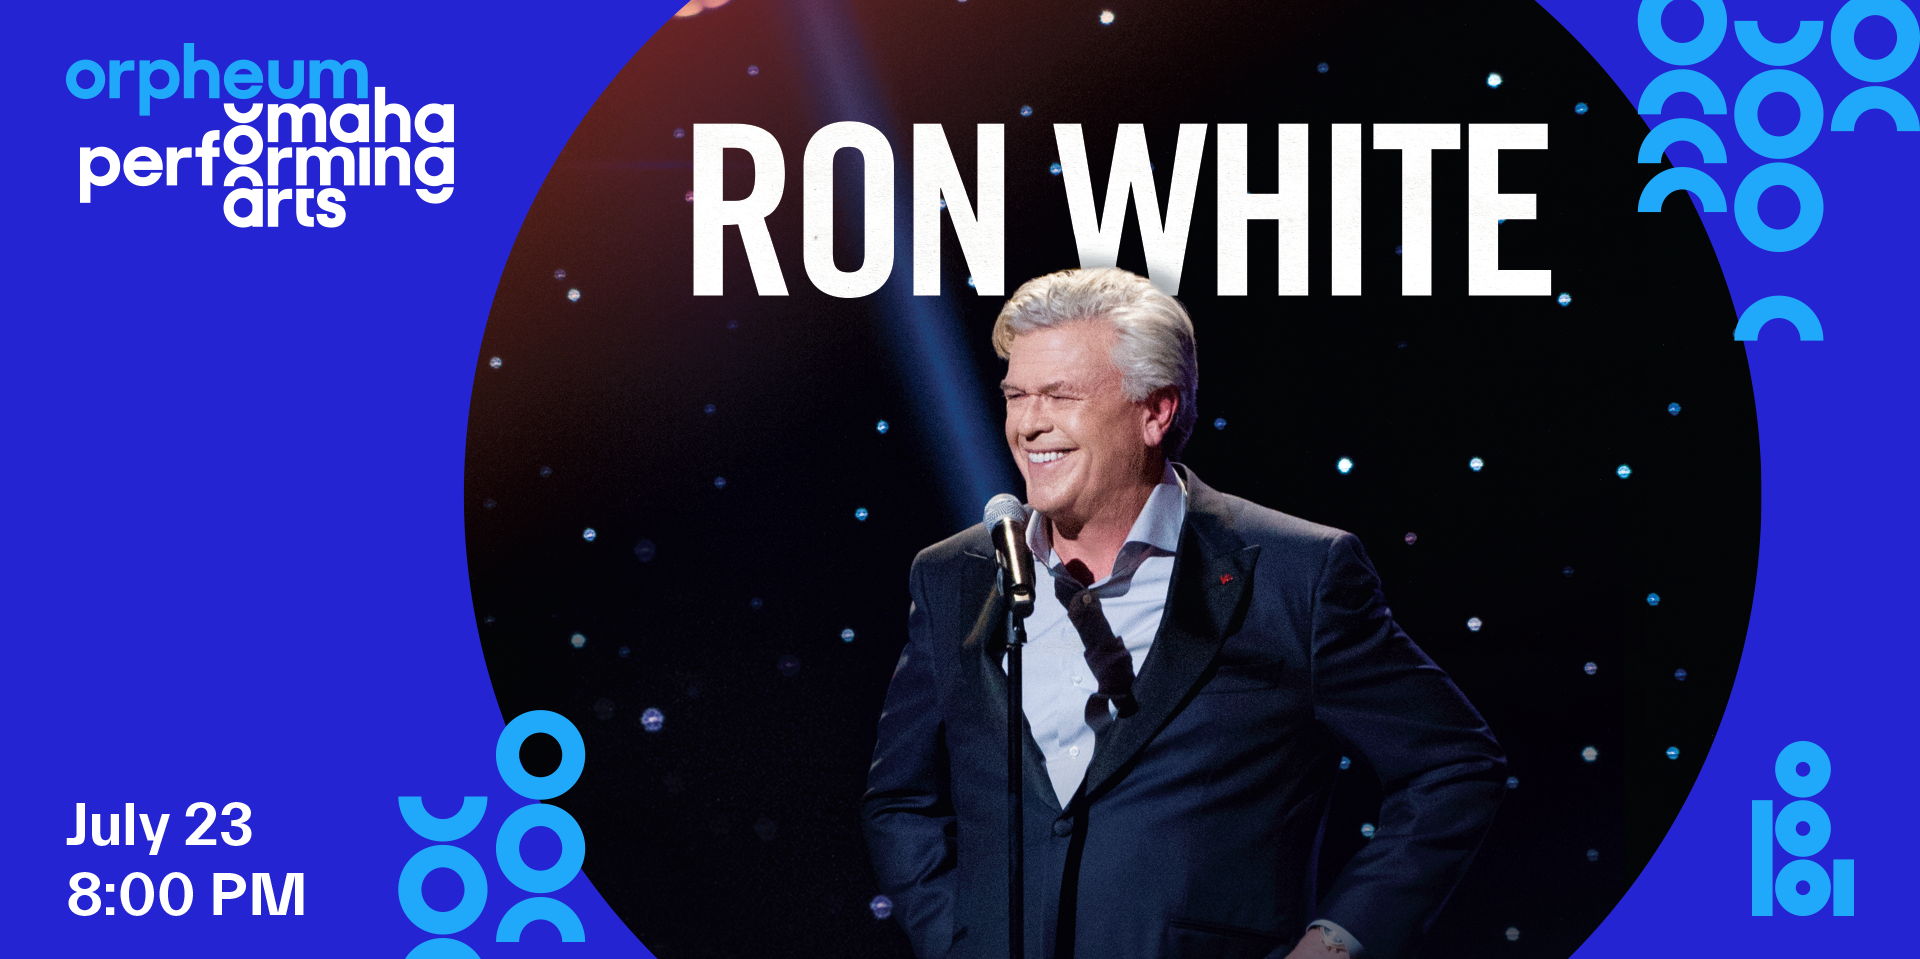 Ron White promotional image